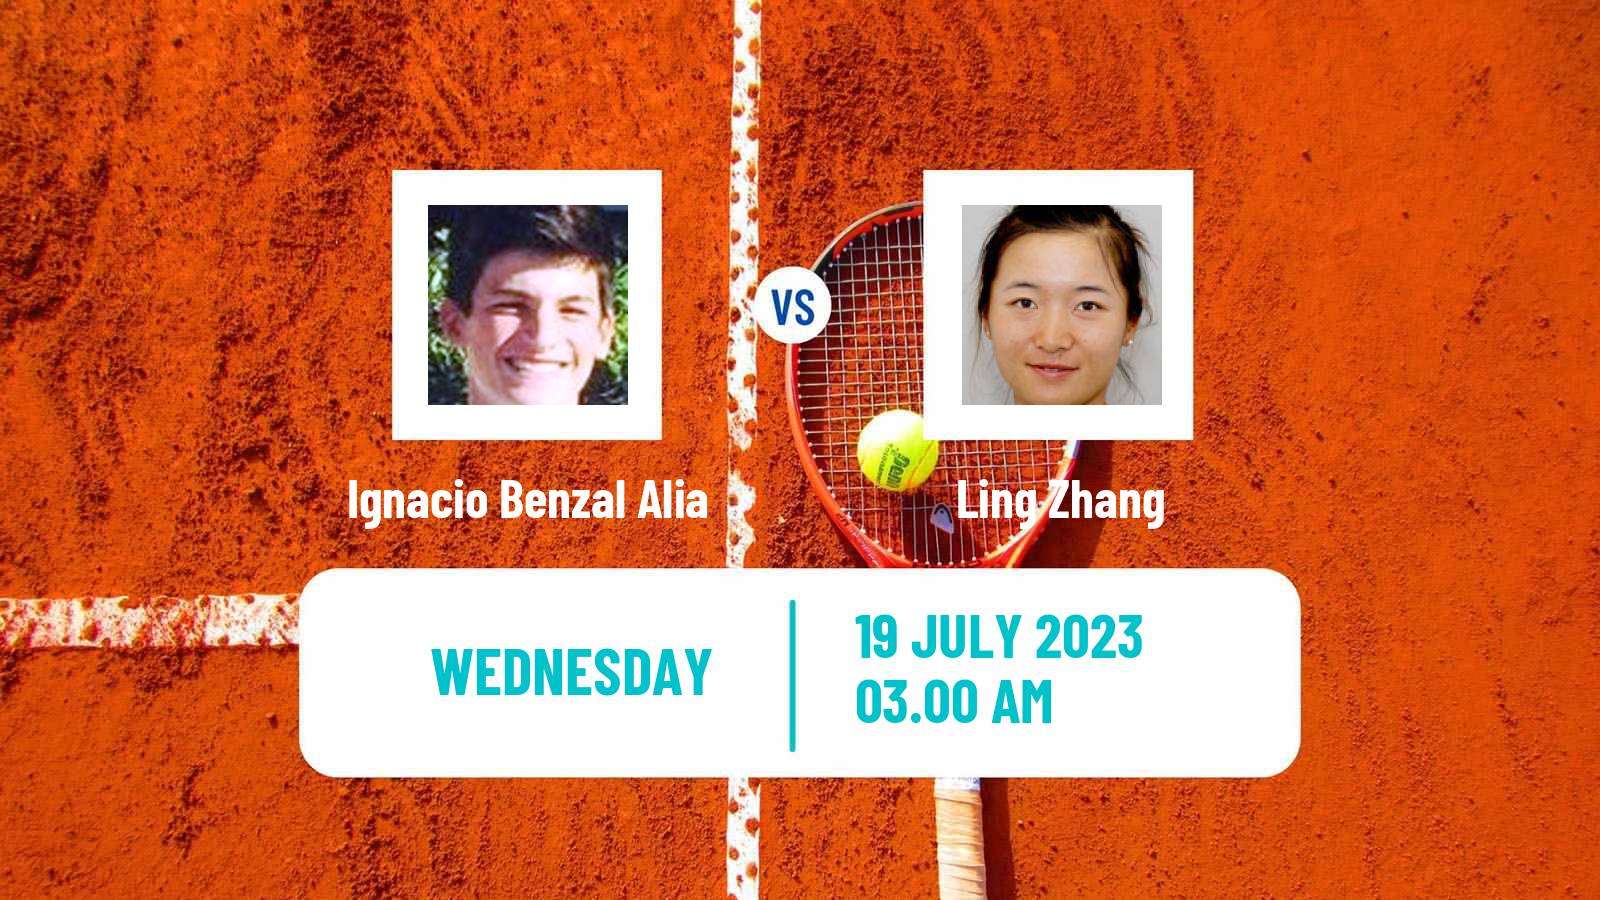 Tennis ITF M25 Fuzhou Men Ignacio Benzal Alia - Ling Zhang